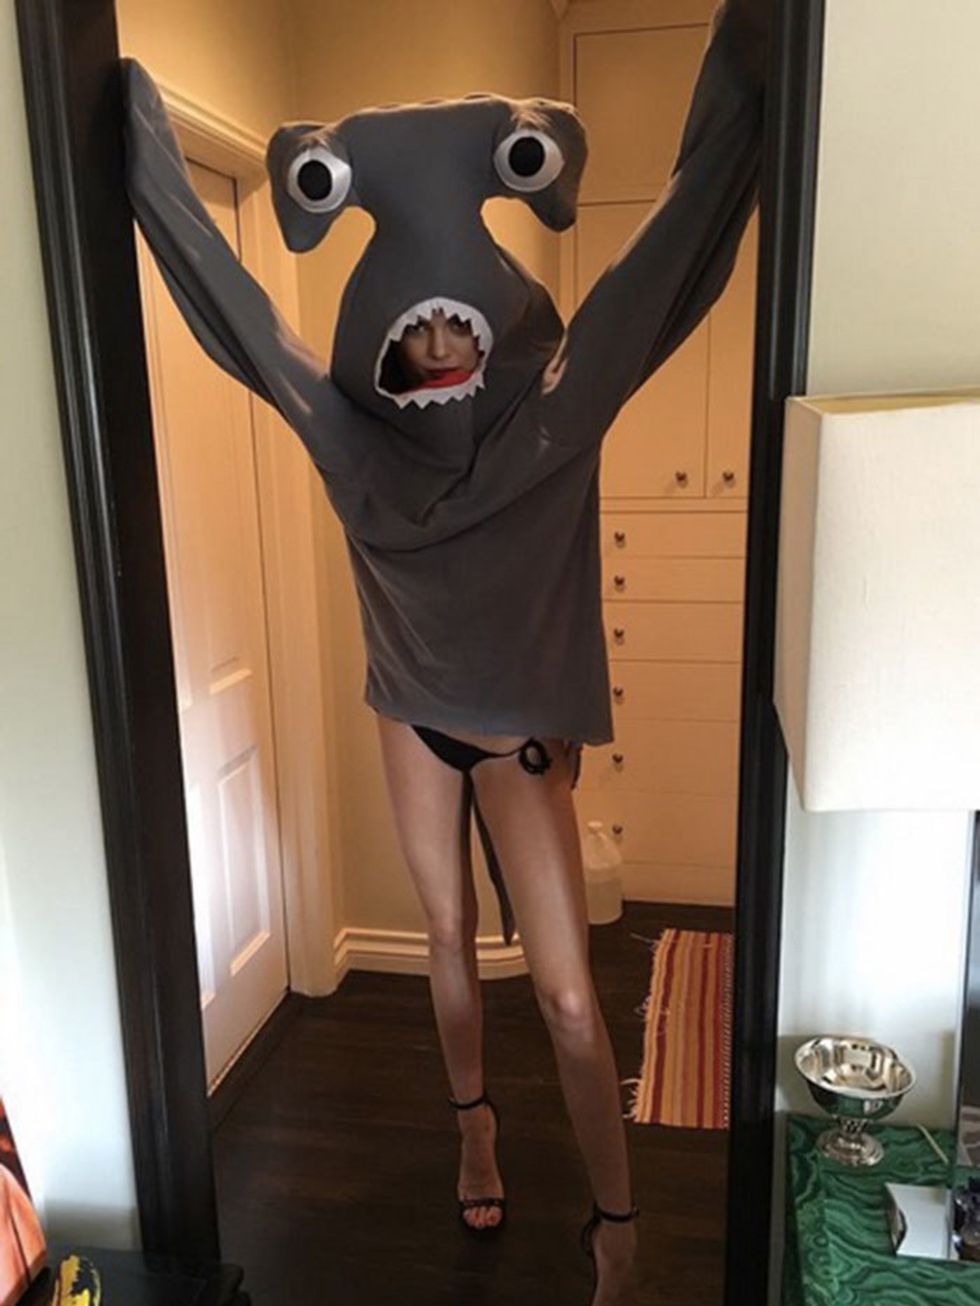 Kendall Jenner's getting prepped for Love Magazine's annual advent calendar. Left shark? #loveadvent